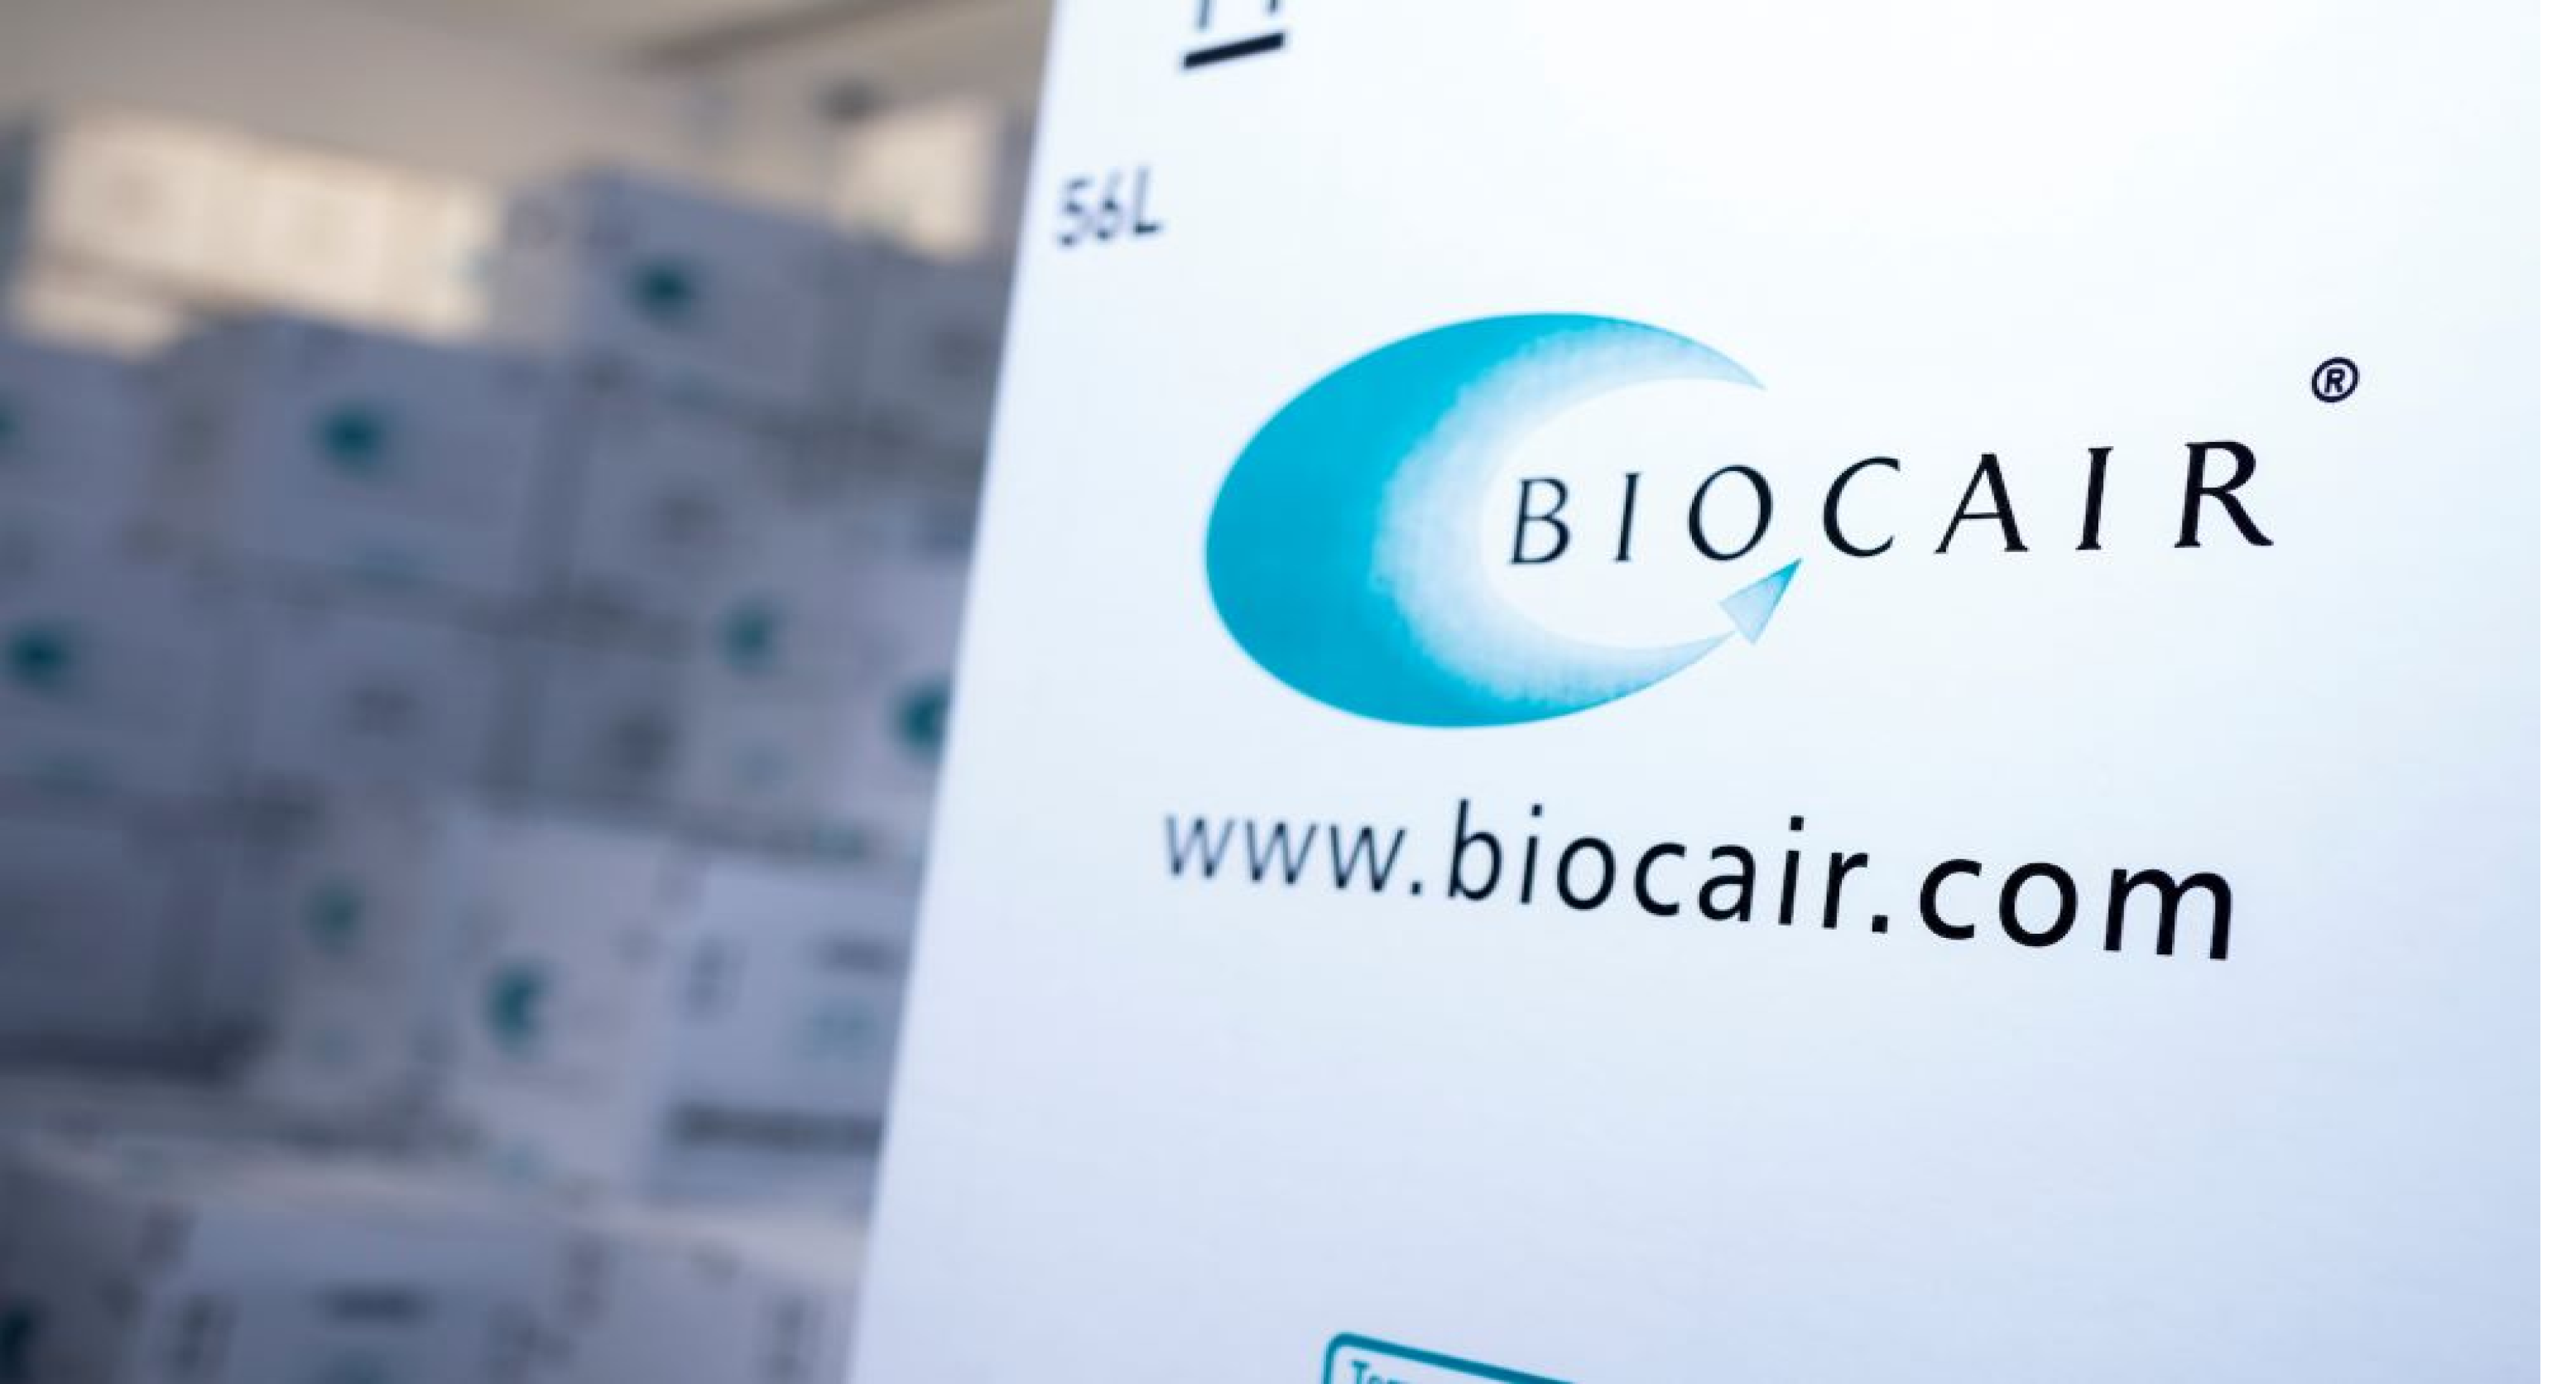 Biocair branded box